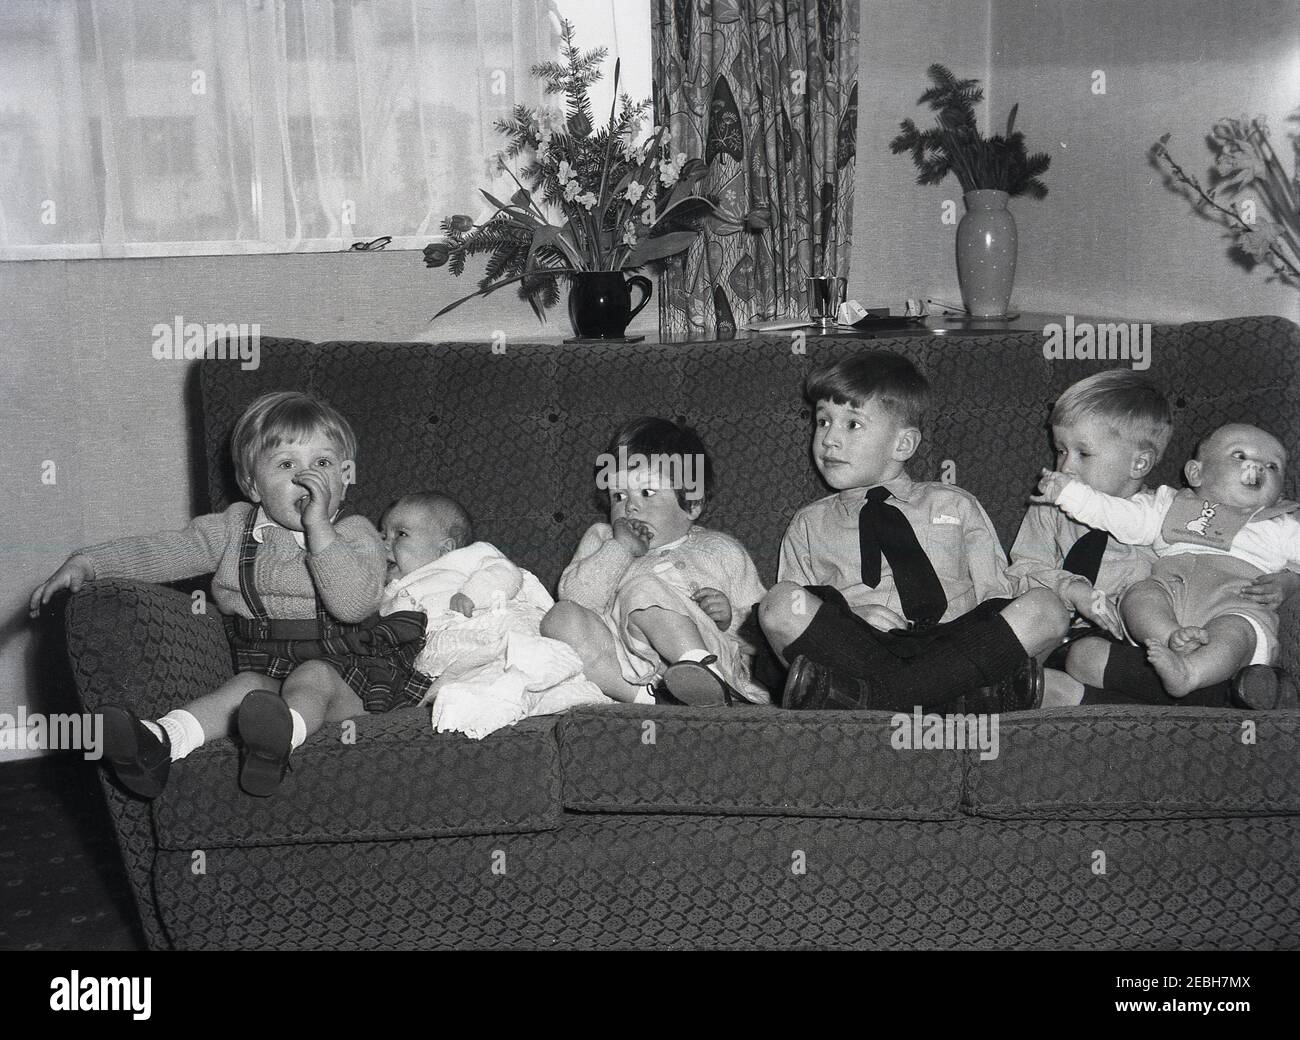 Años 50 histórico, en una habitación frontal, en un sofá, seis niños pequeños sentados juntos en una fila, dos niños pequeños, dos niñas y dos bebés, tal vez para una foto familiar, Inglaterra, Reino Unido. Conseguir que seis niños se sentaran juntos uno al lado del otro fue un logro. Foto de stock